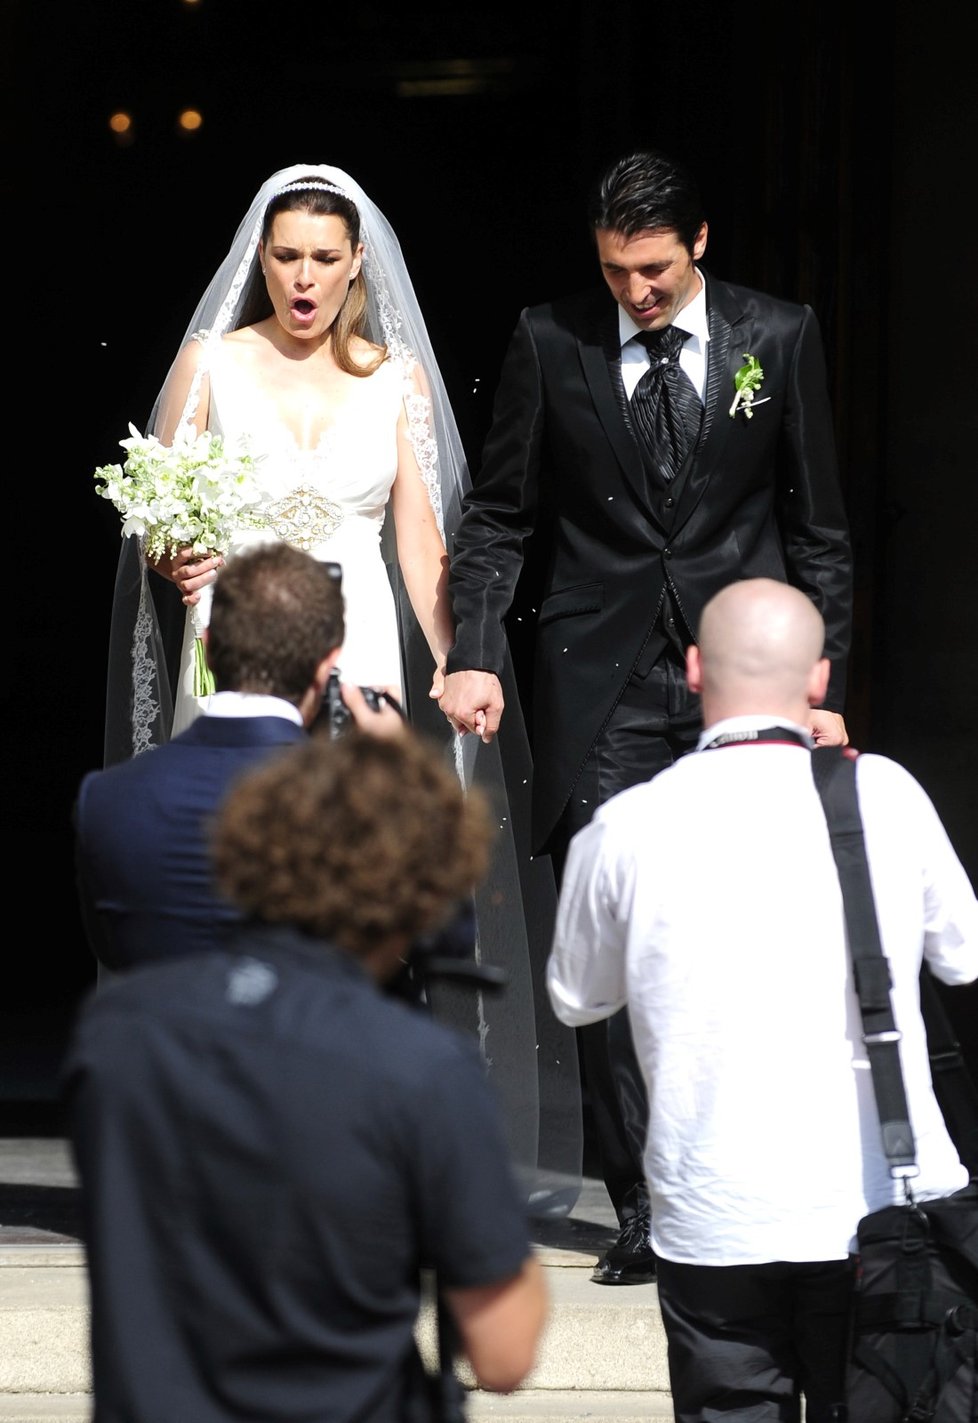 Svatba Aleny Šeredové a Gigiho Buffona v létě 2011 v Praze na Vyšehradě